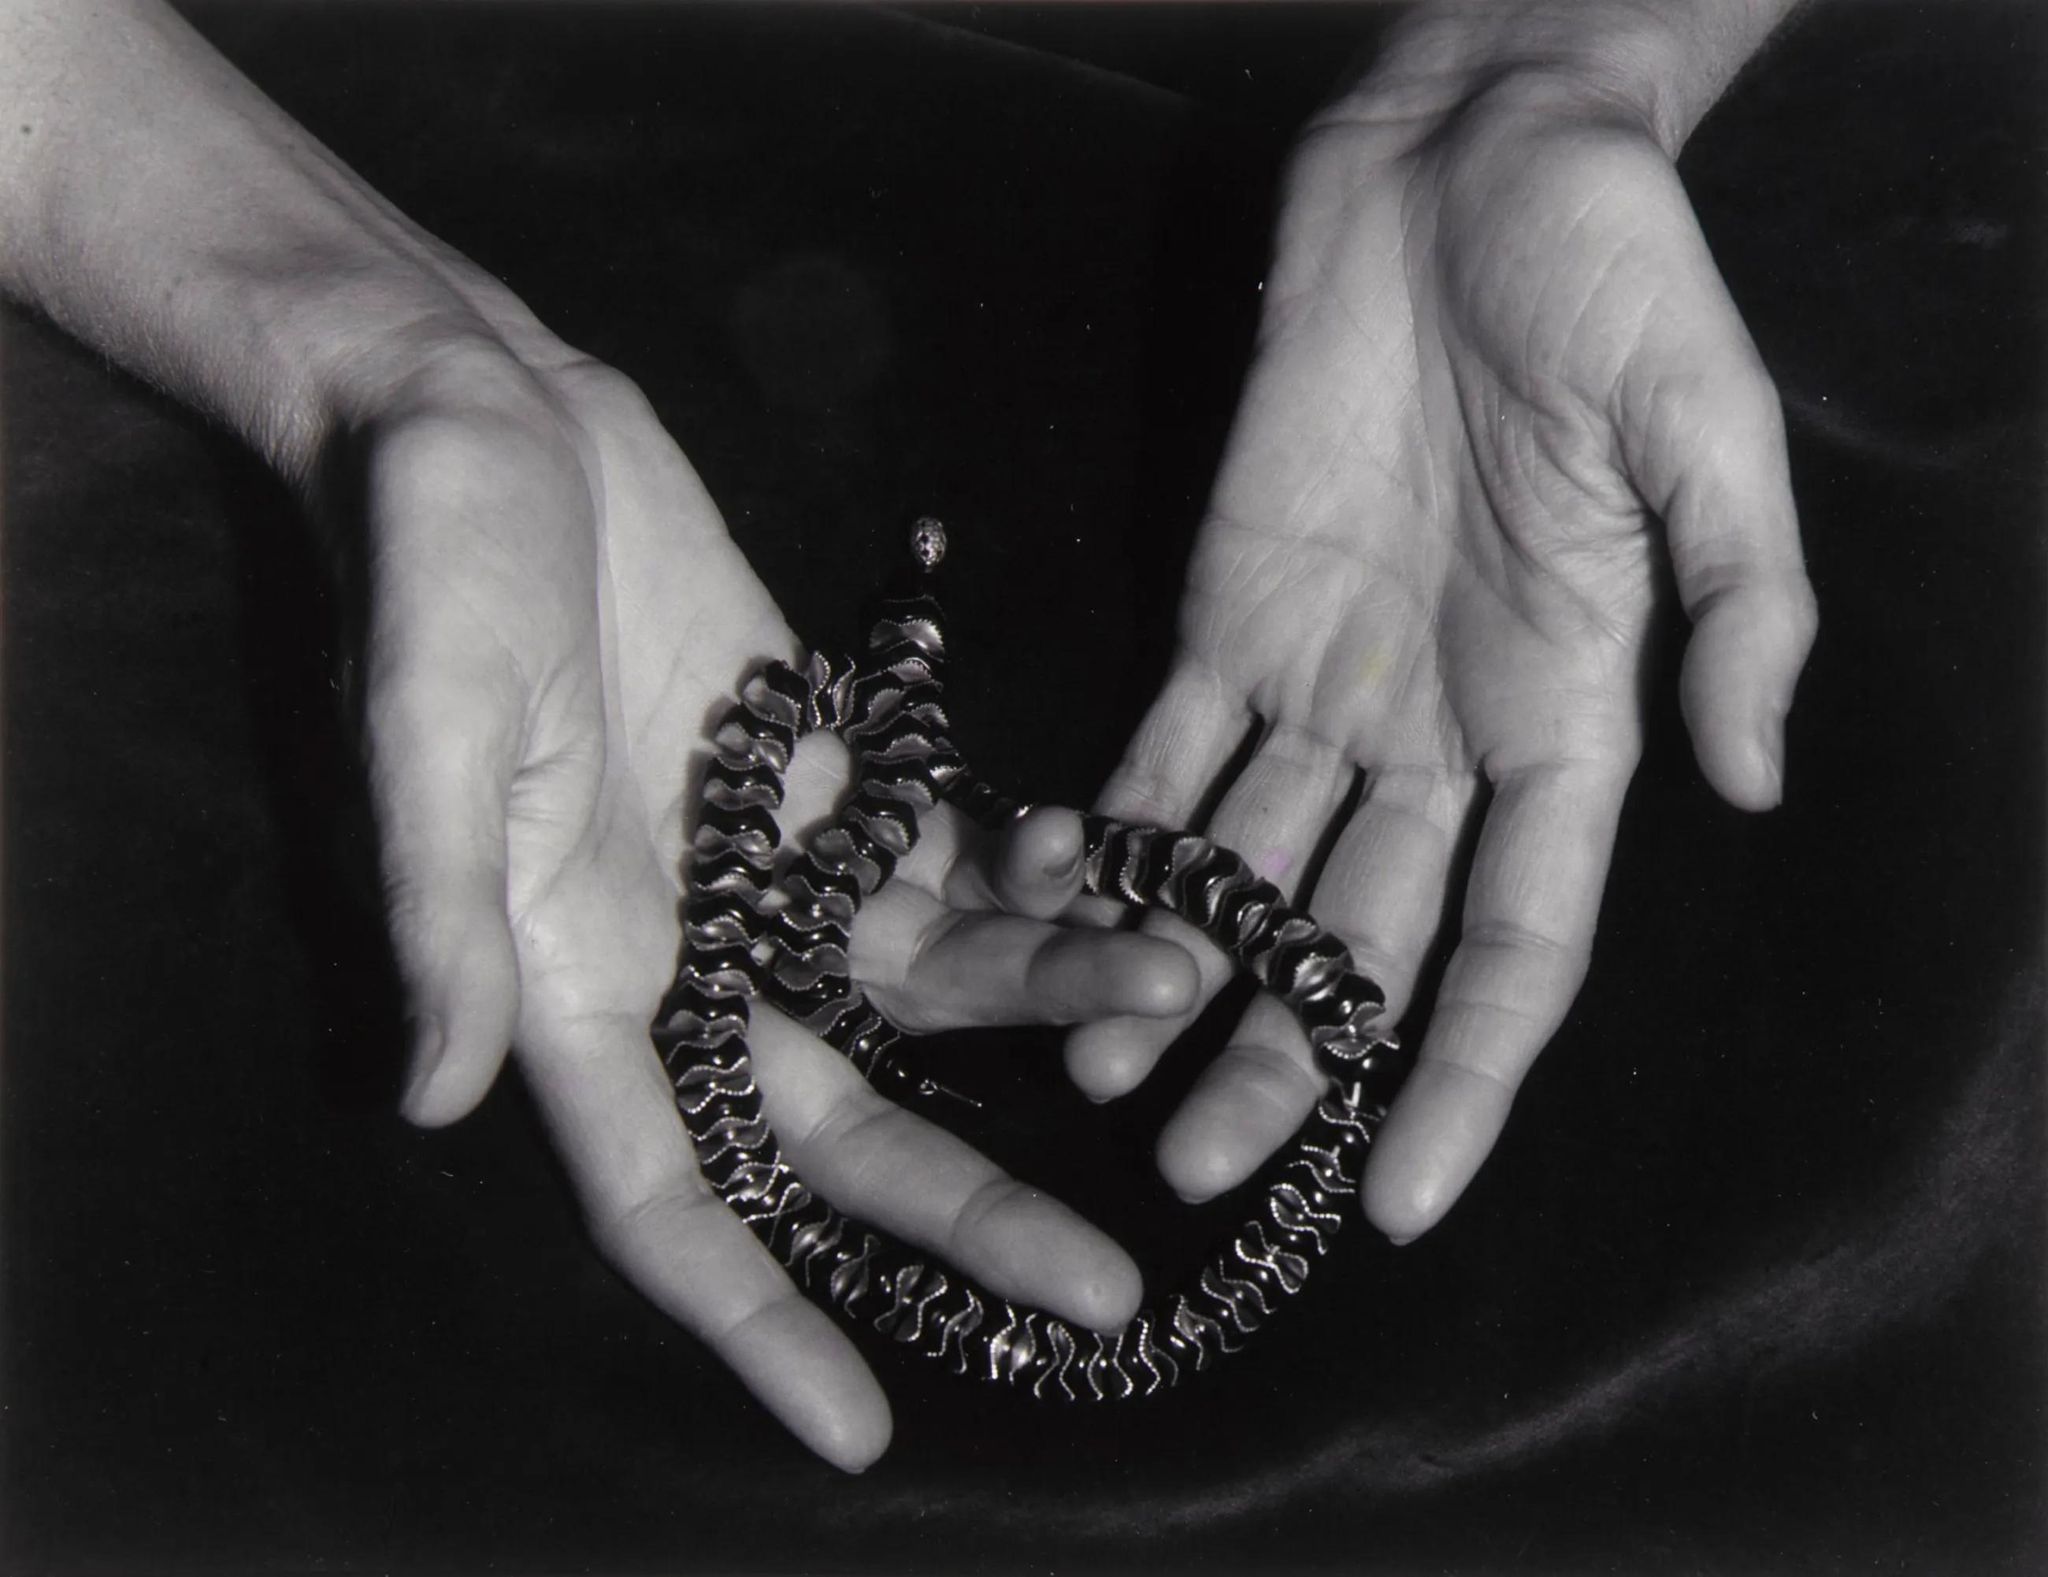 The Hands of Annette Rosenshine, San Francisco